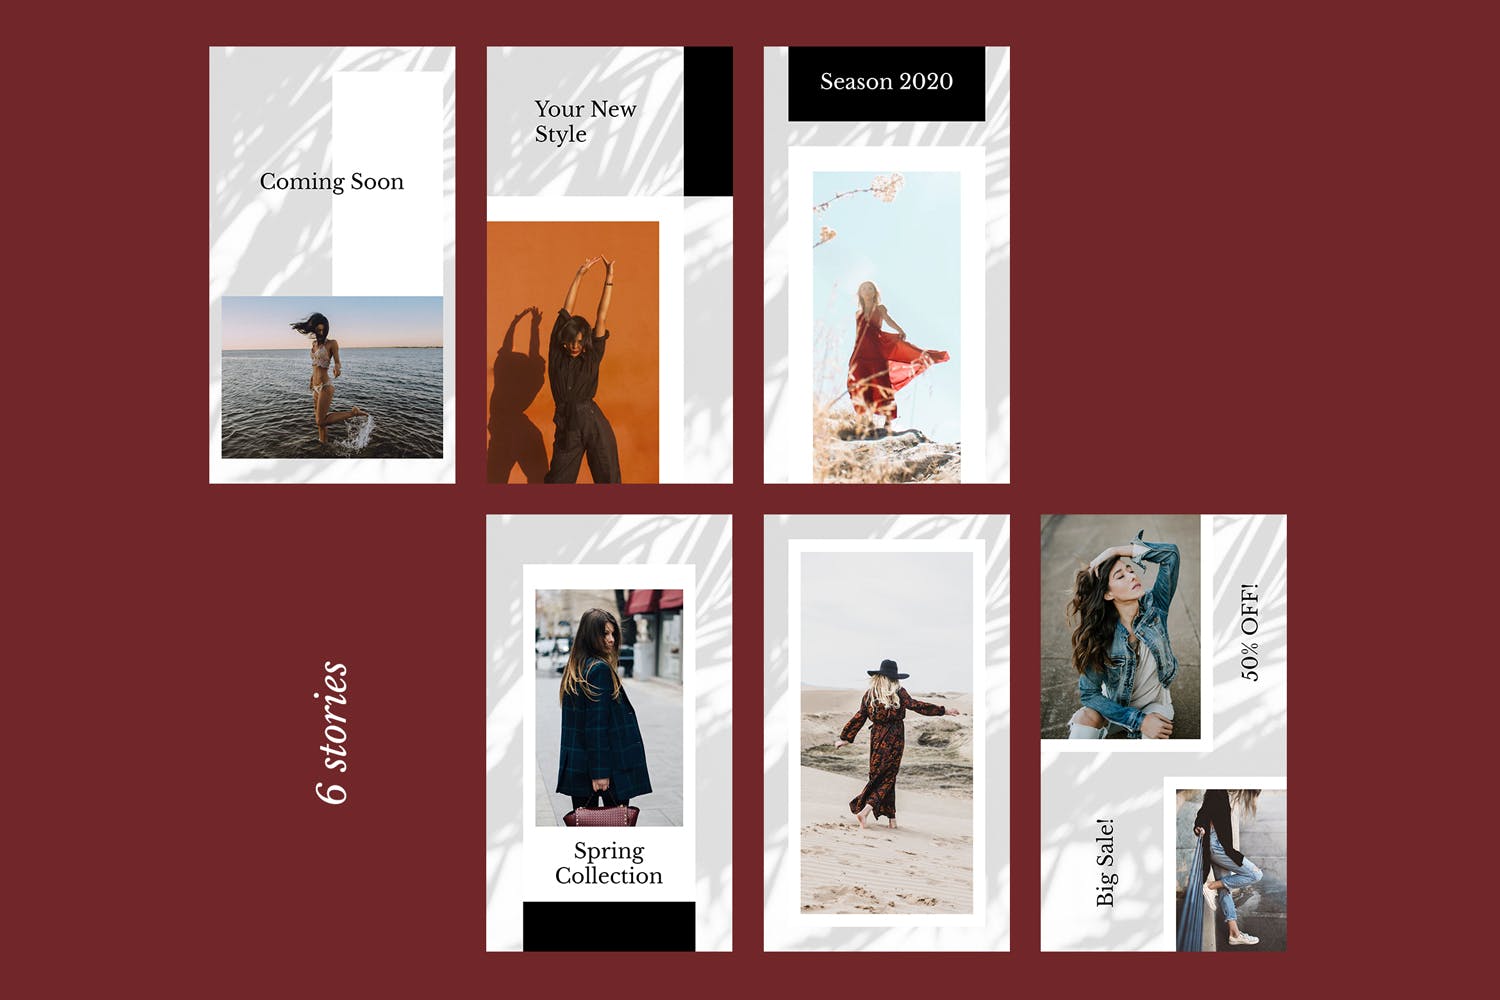 时装品牌产品展示Instagram社交贴图设计模板第一素材精选v52 Instagram Stories Kit (Vol.52)插图(1)